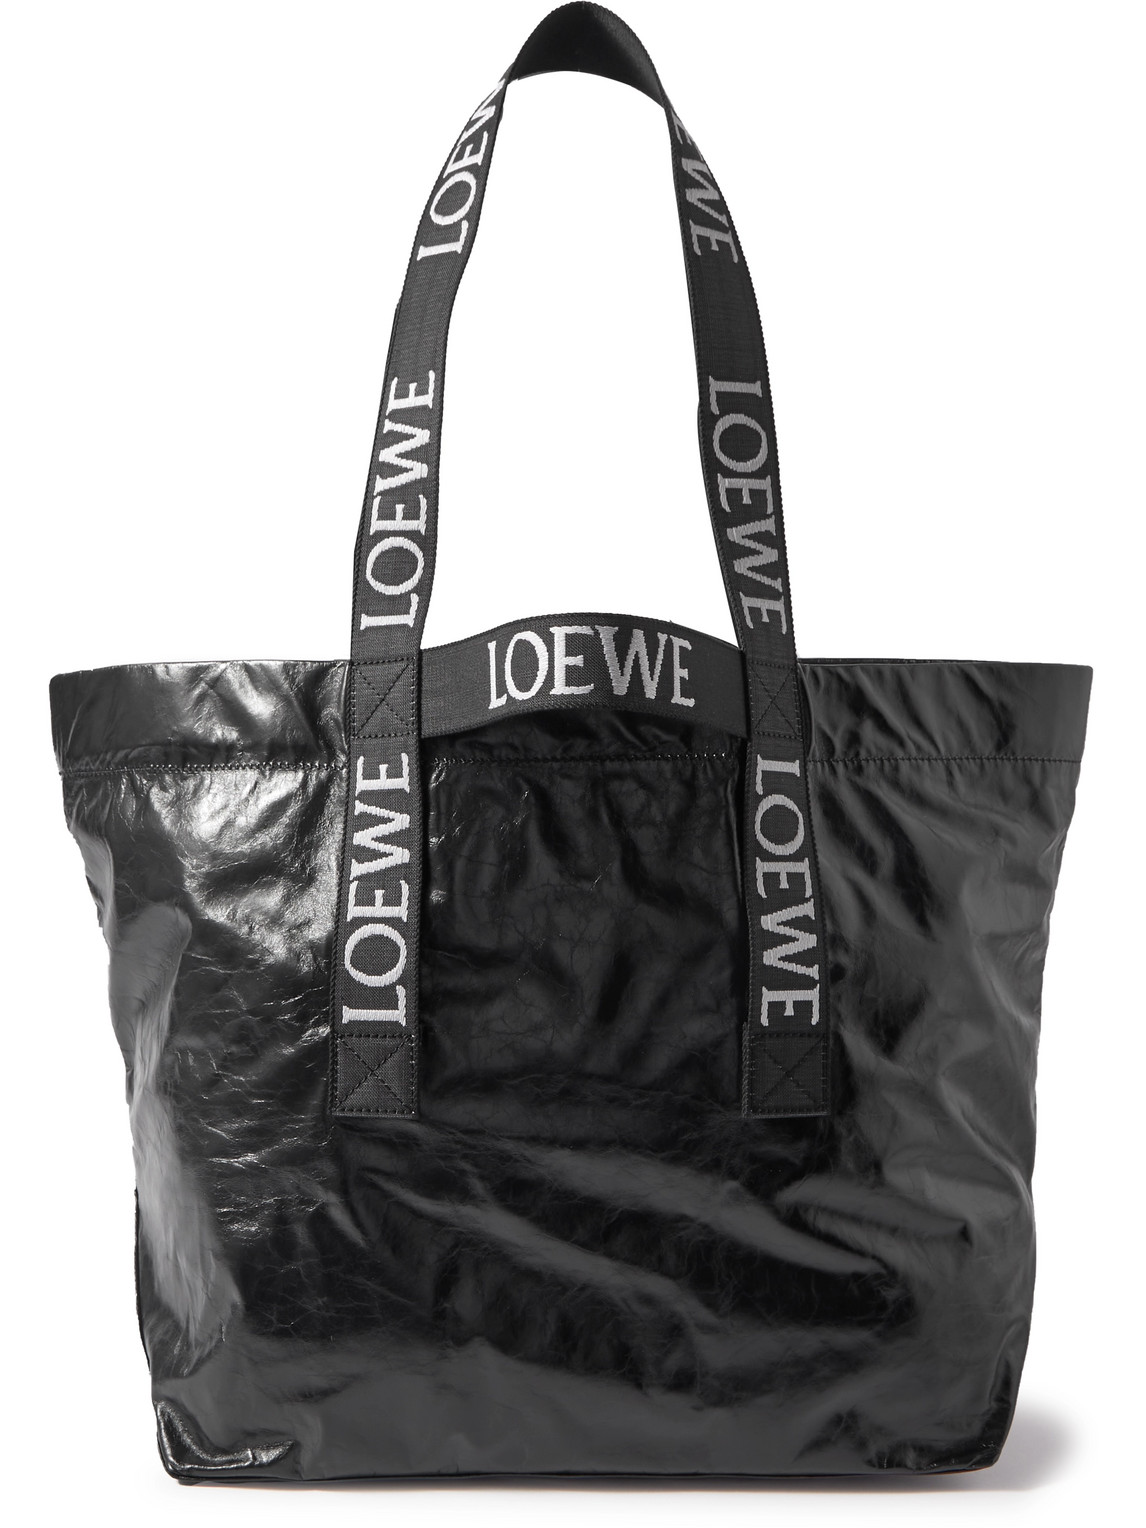 Loewe Distressed Leather Tote Bag In Black